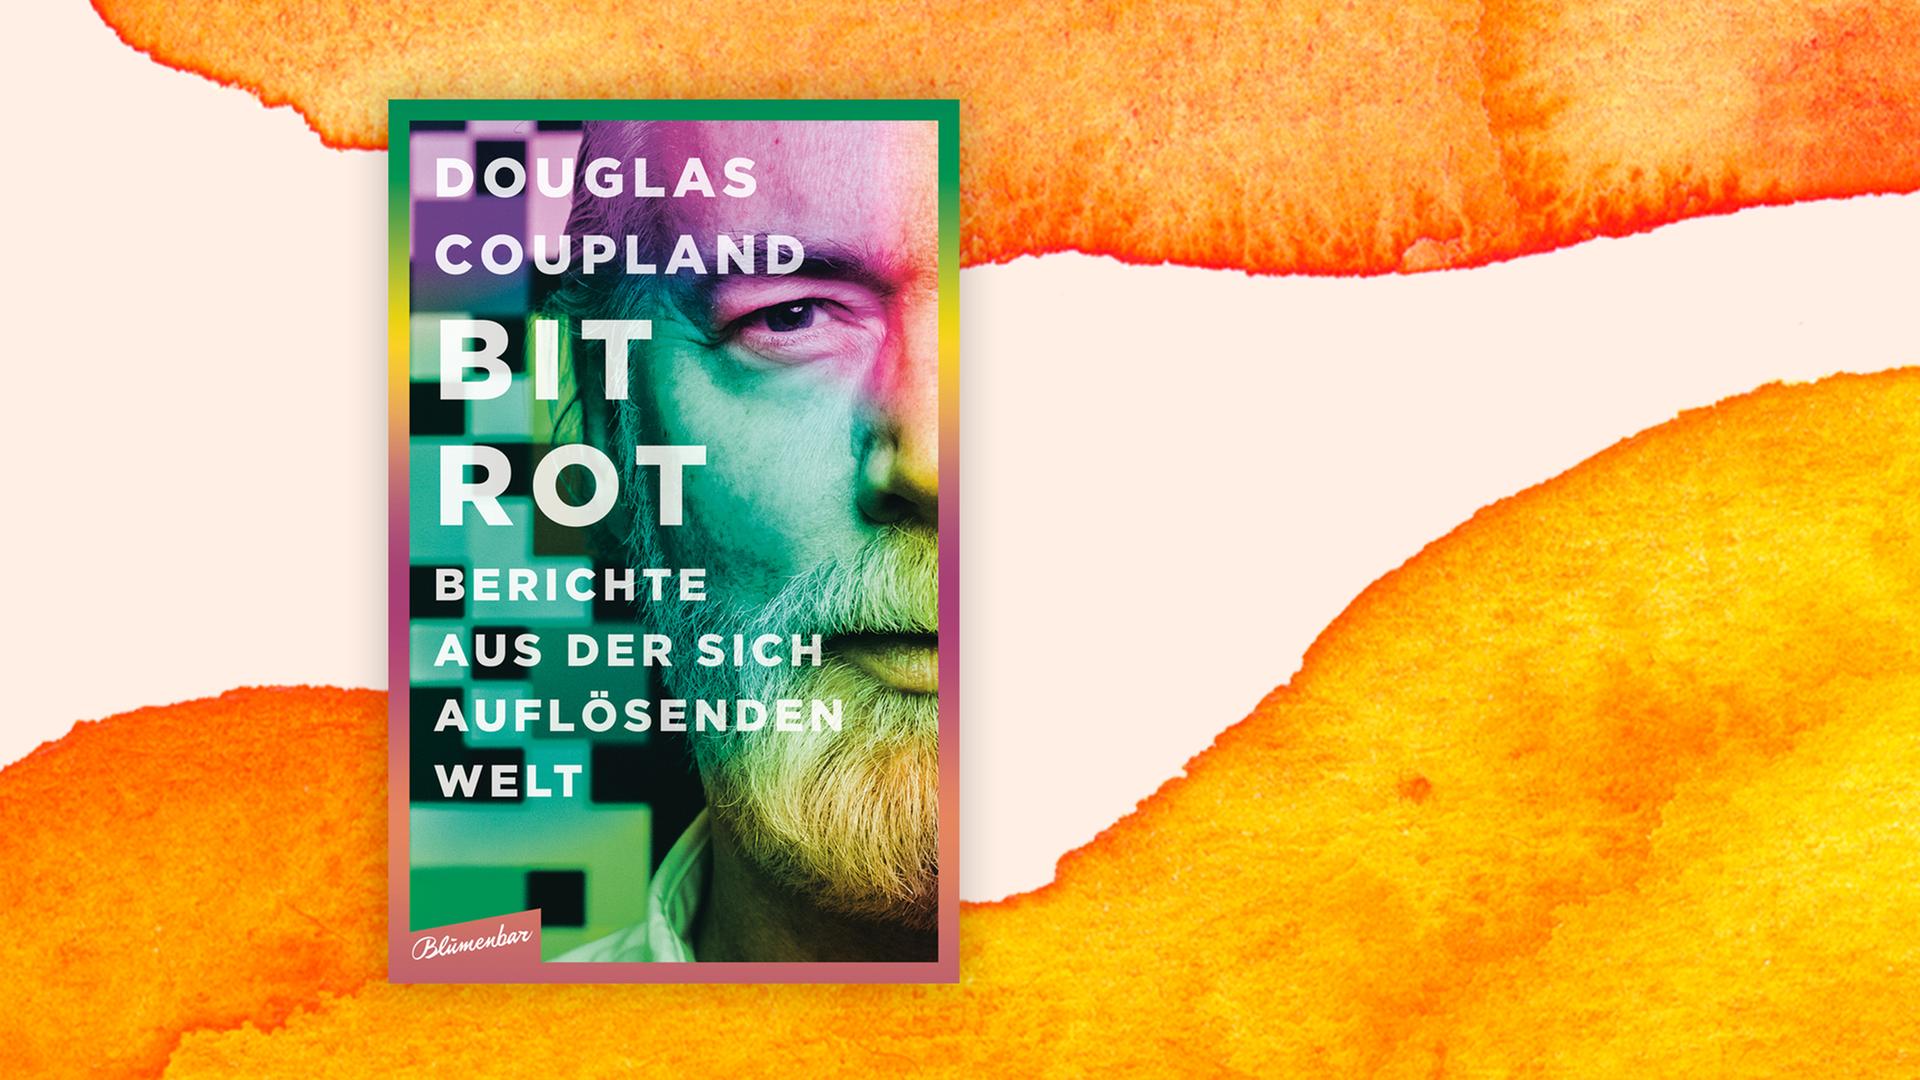 Das Buchcover von Titel "Bit Rot", erschienen beim Blumenbar-Verlag zeigt den Autor Douglas Coupland in einem bunt eingefärbten Close Up.